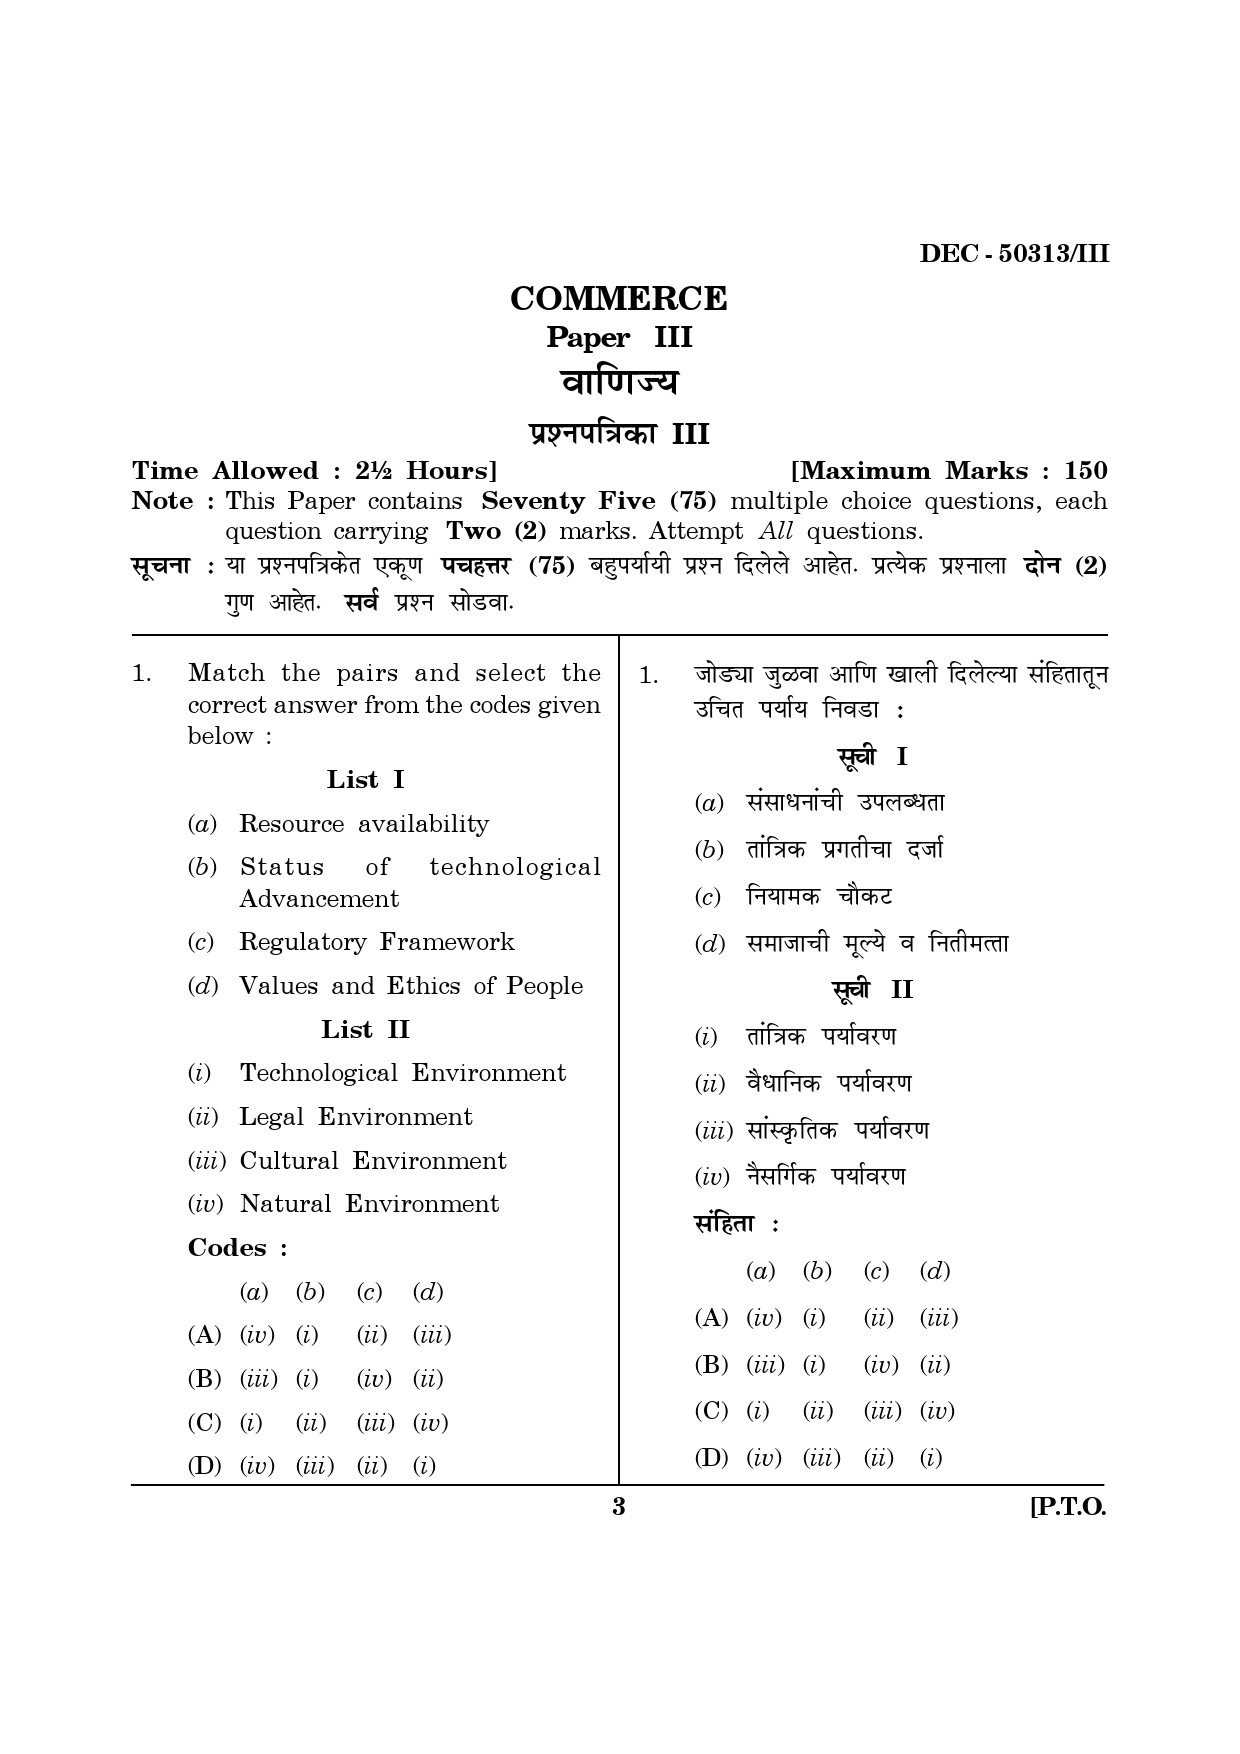 Maharashtra SET Commerce Question Paper III December 2013 2